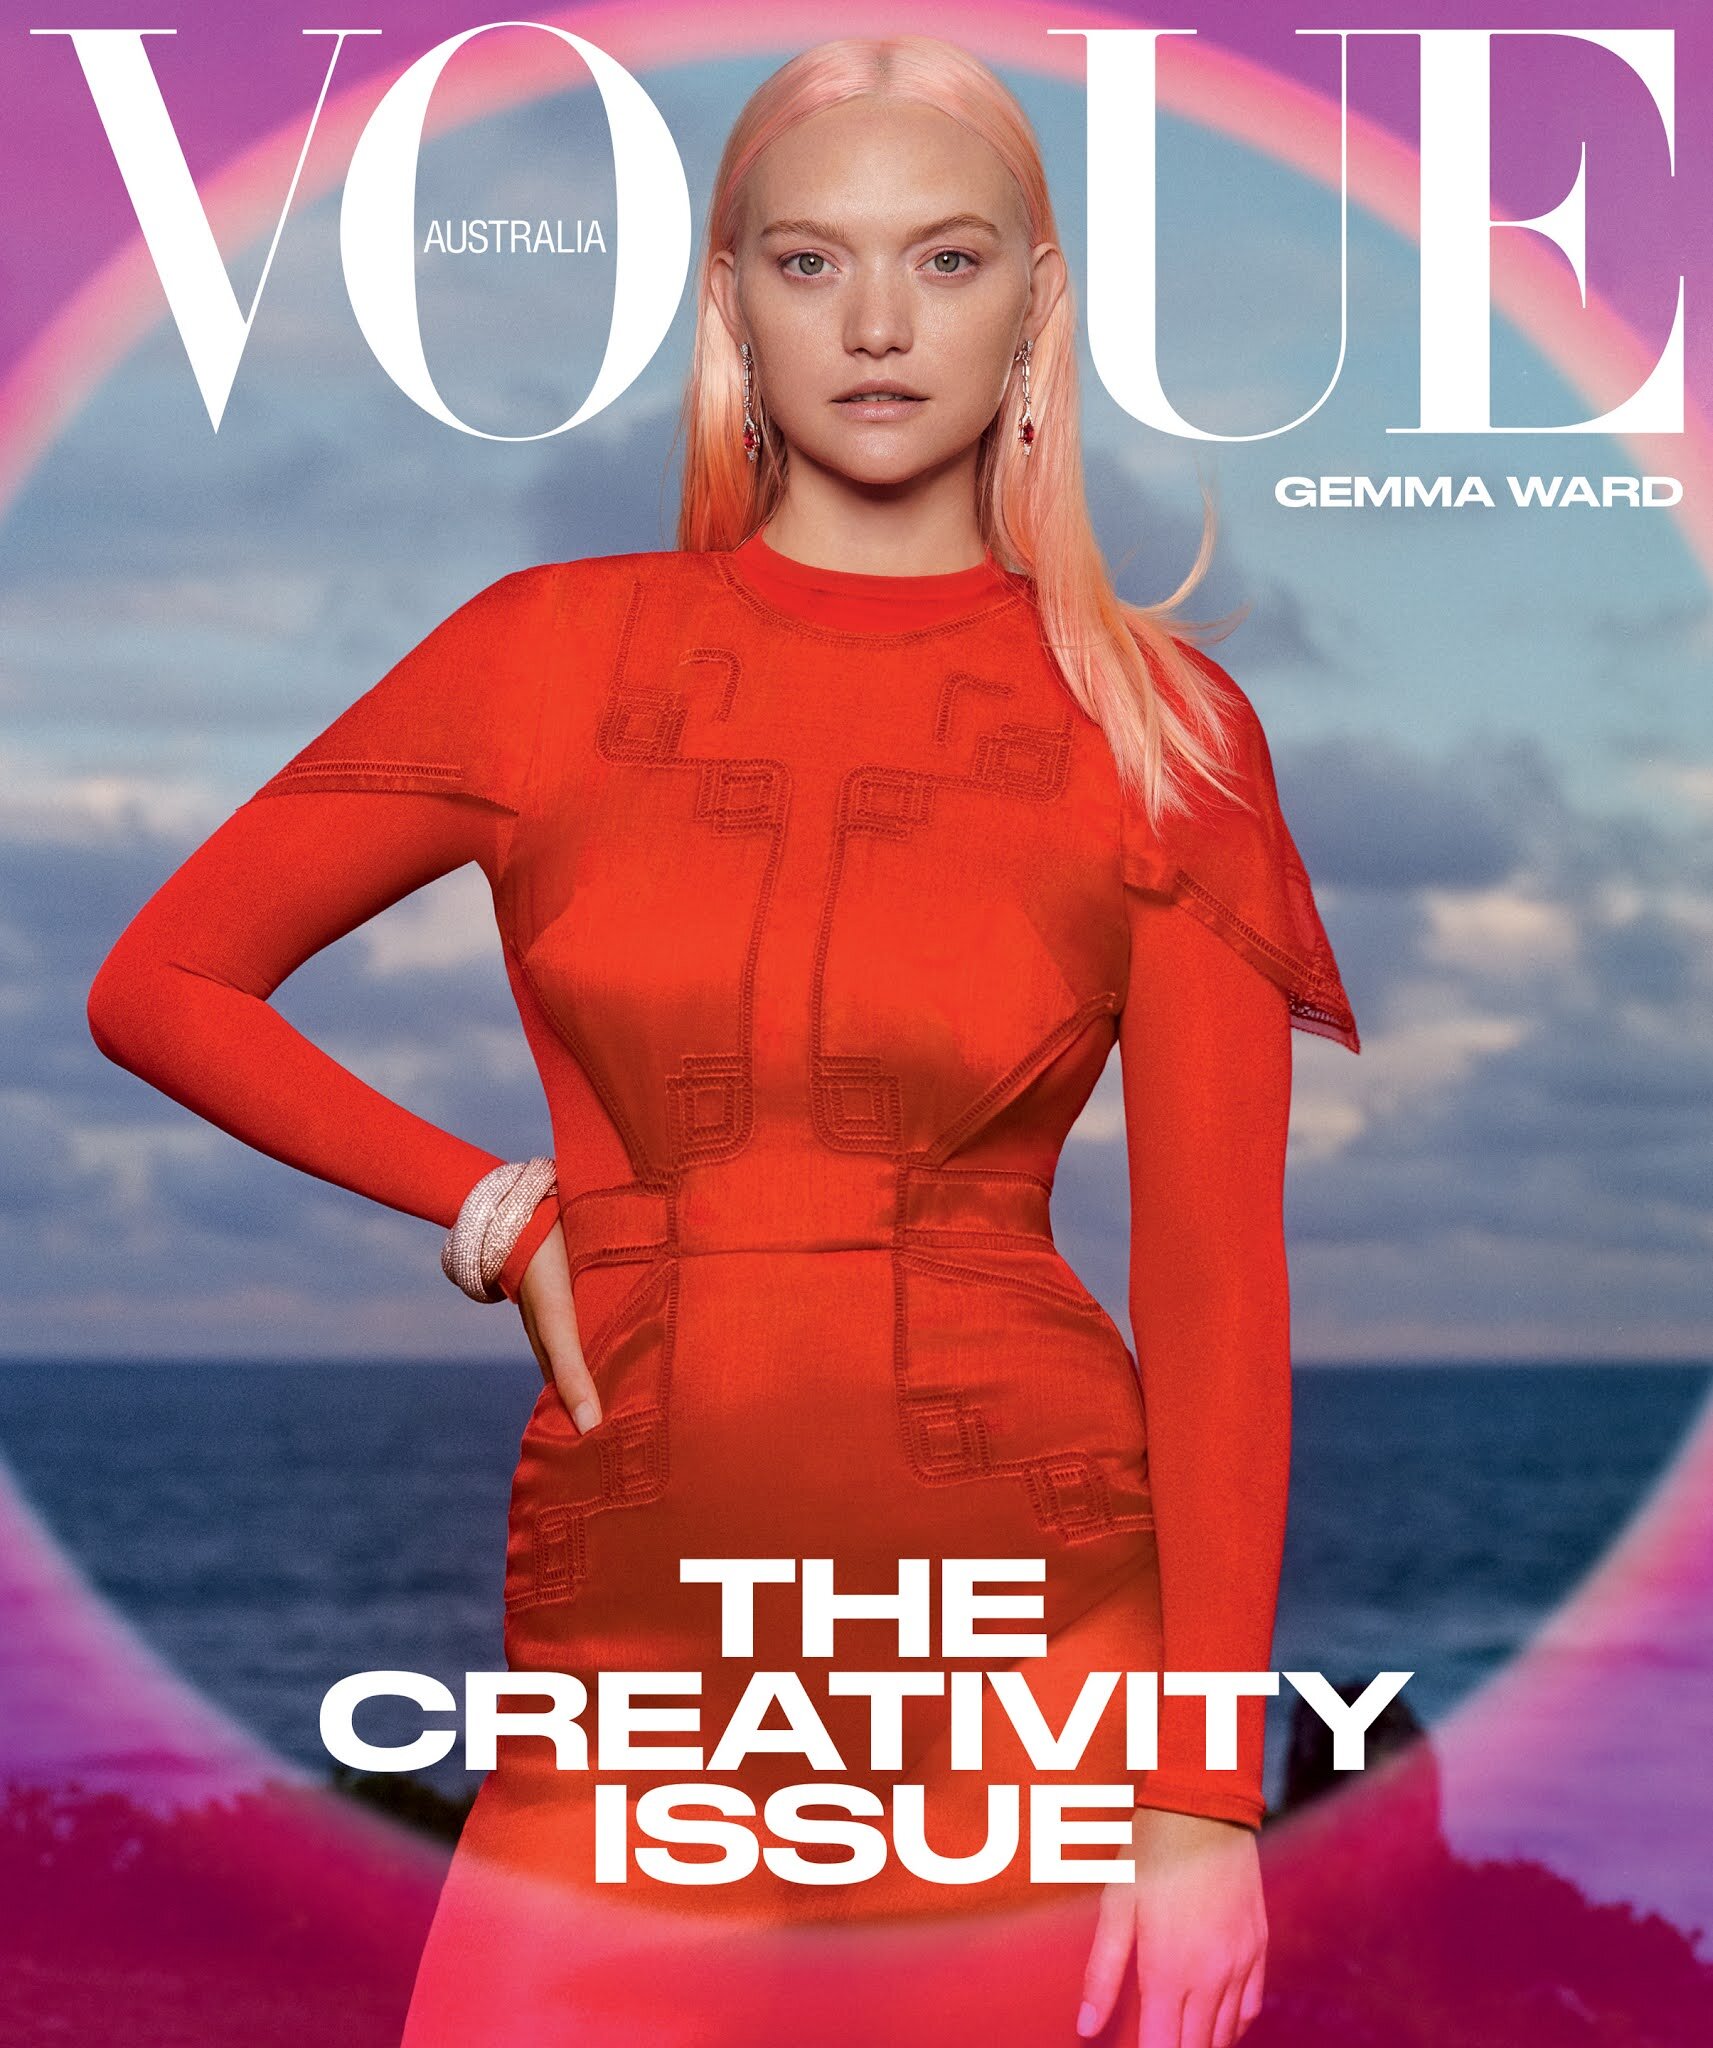 Gemma Ward Vogue Australia March 2021 (2).jpg